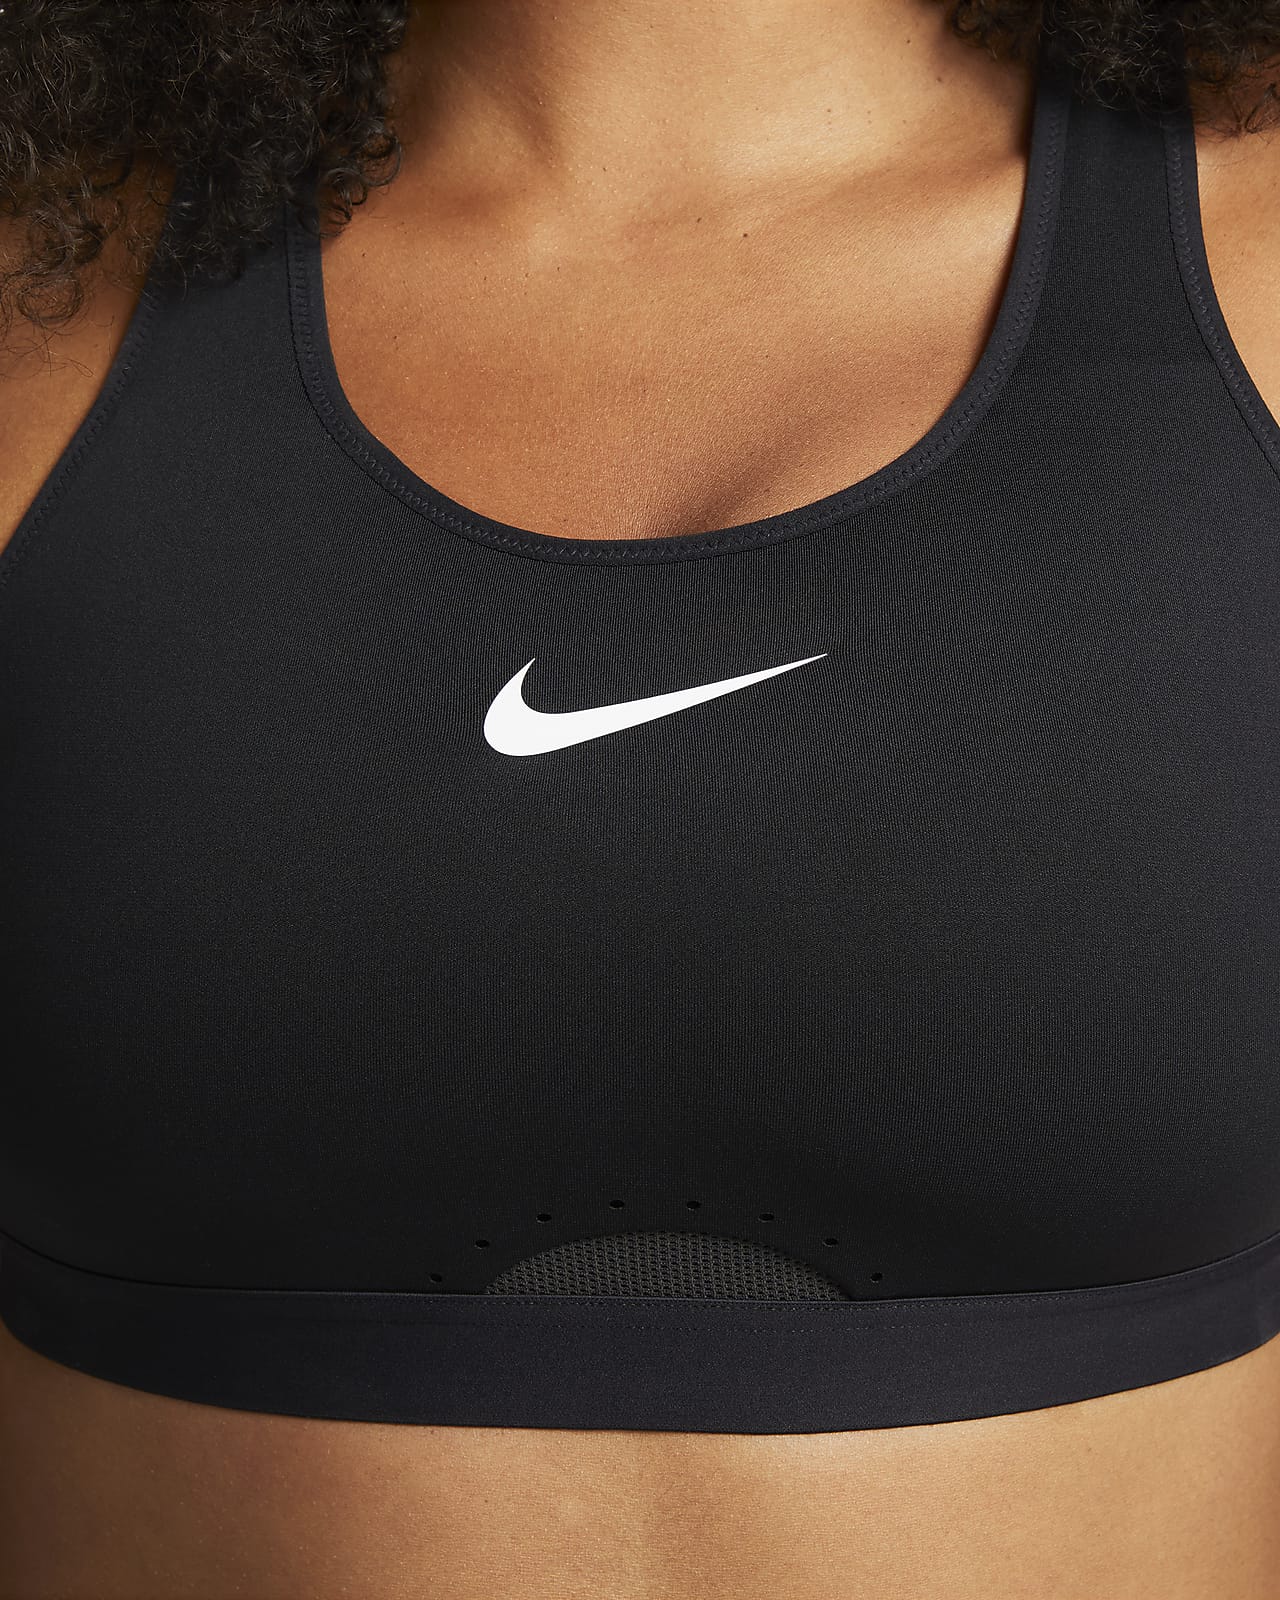 Women's Back Closure Sports Bras. Nike IN